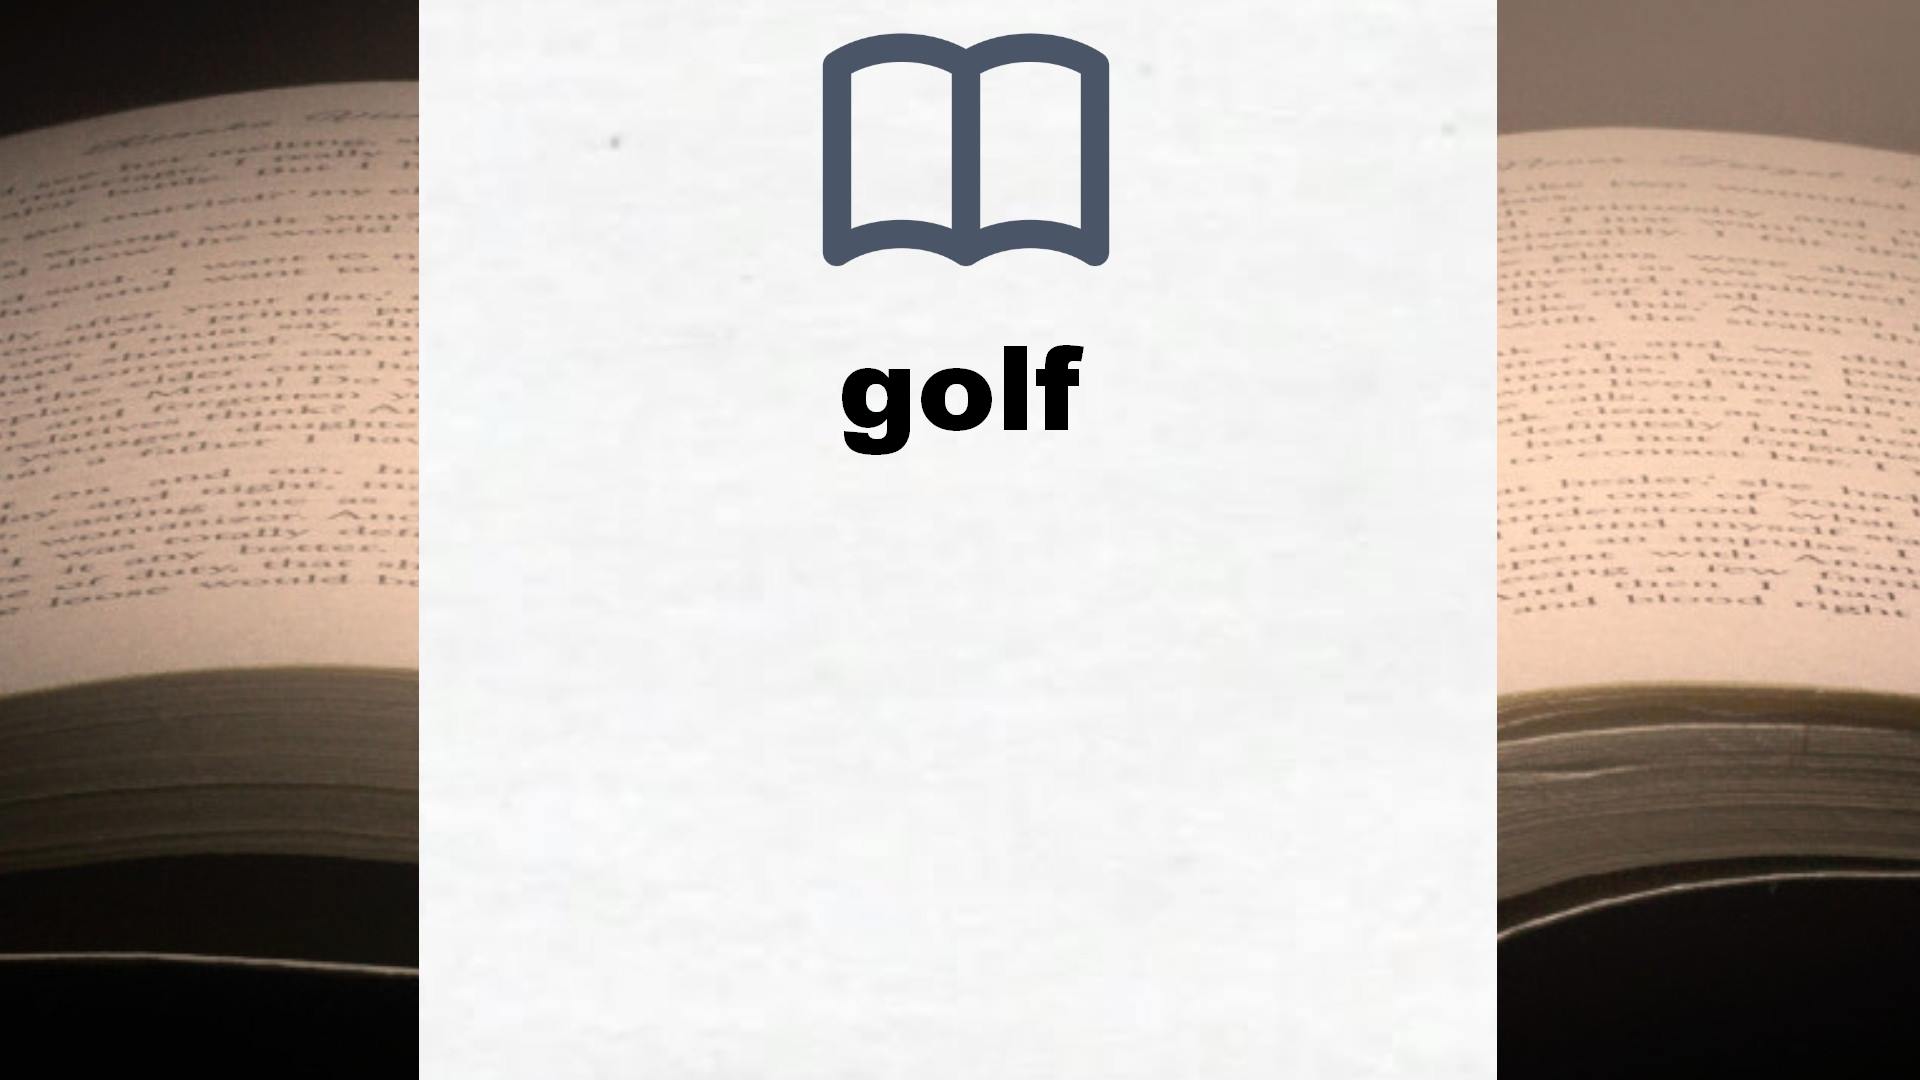 Libros sobre golf